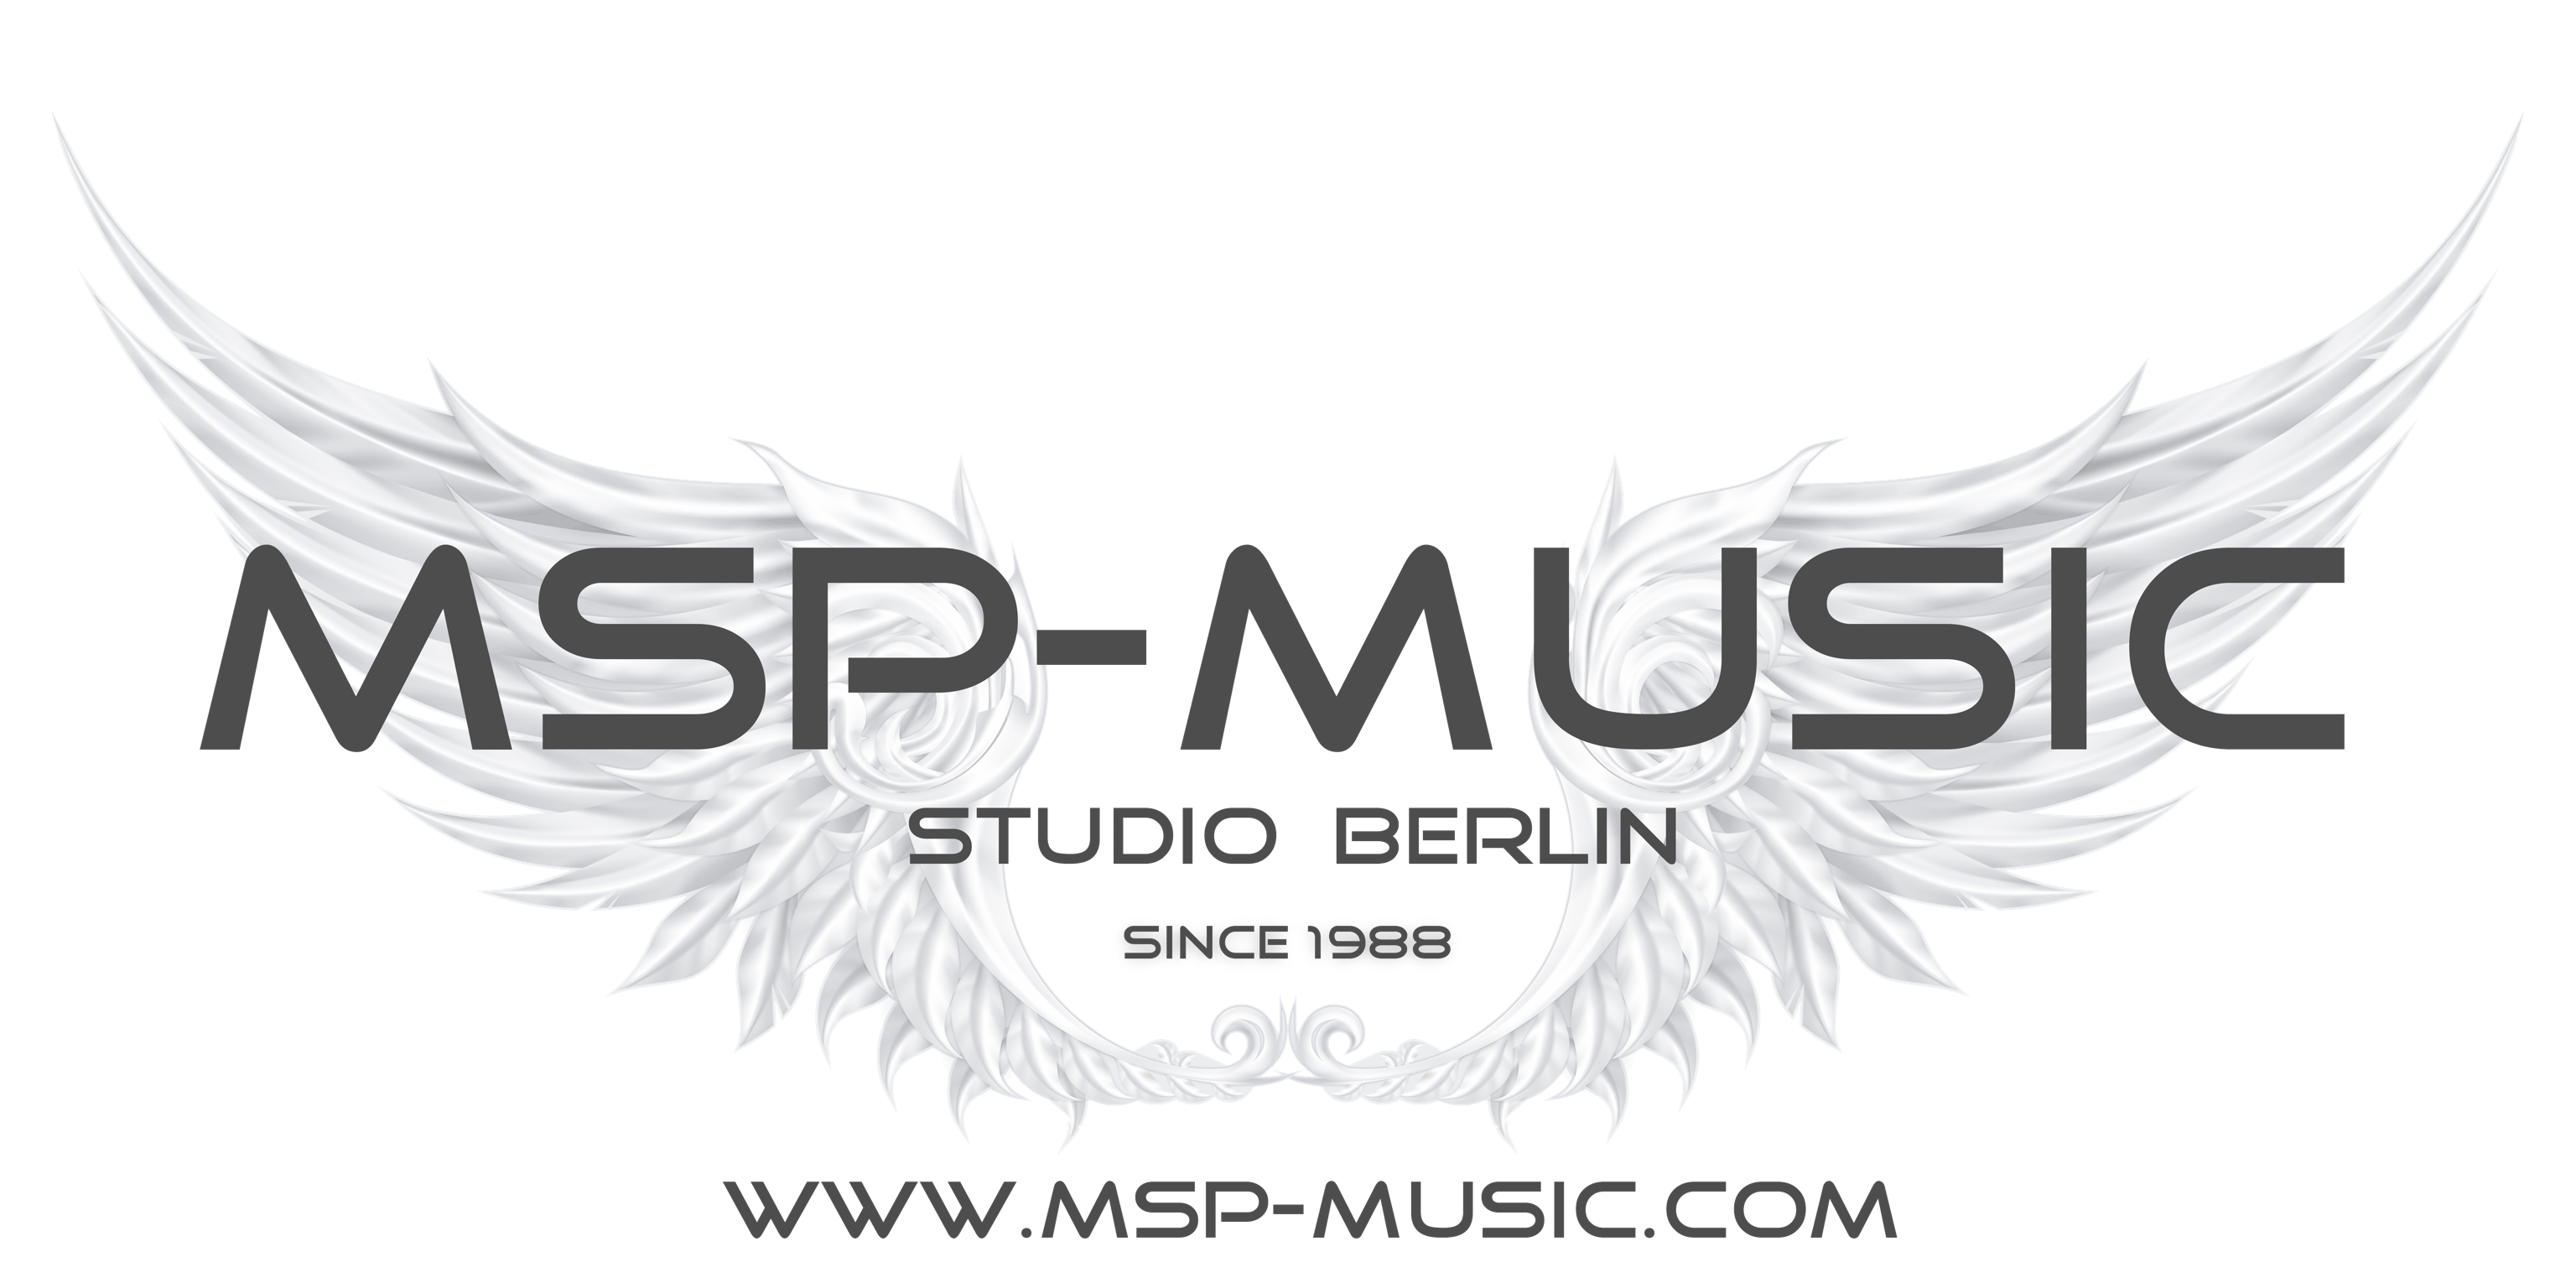 (c) Msp-music.de